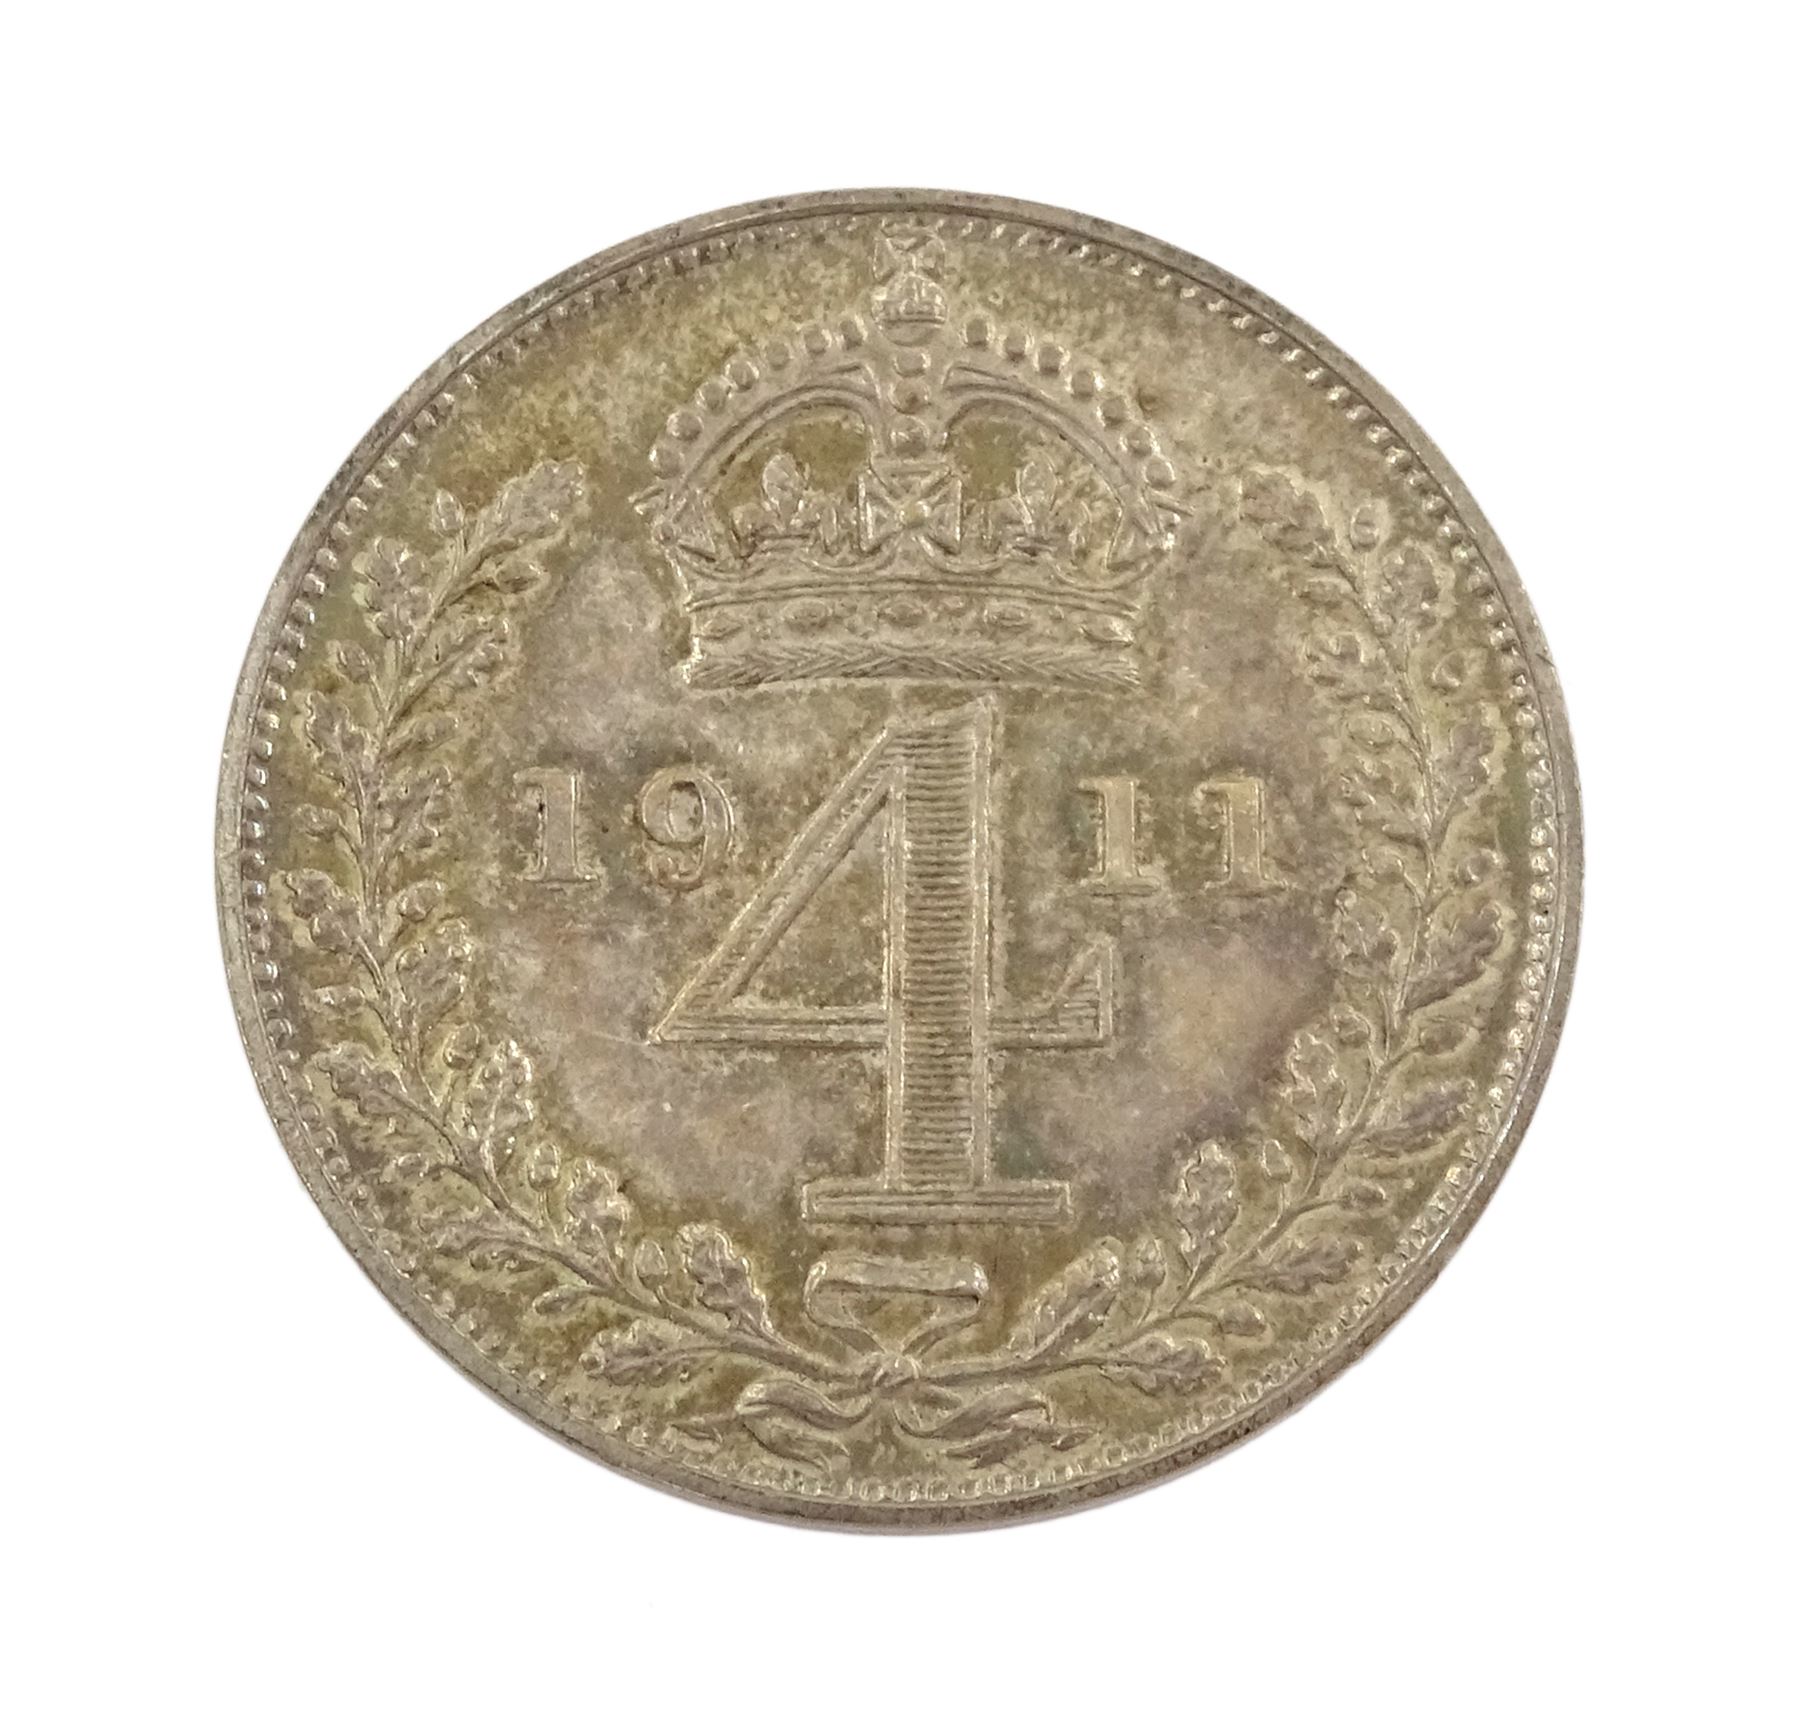 King George V 1911 proof short coin set - Image 15 of 24